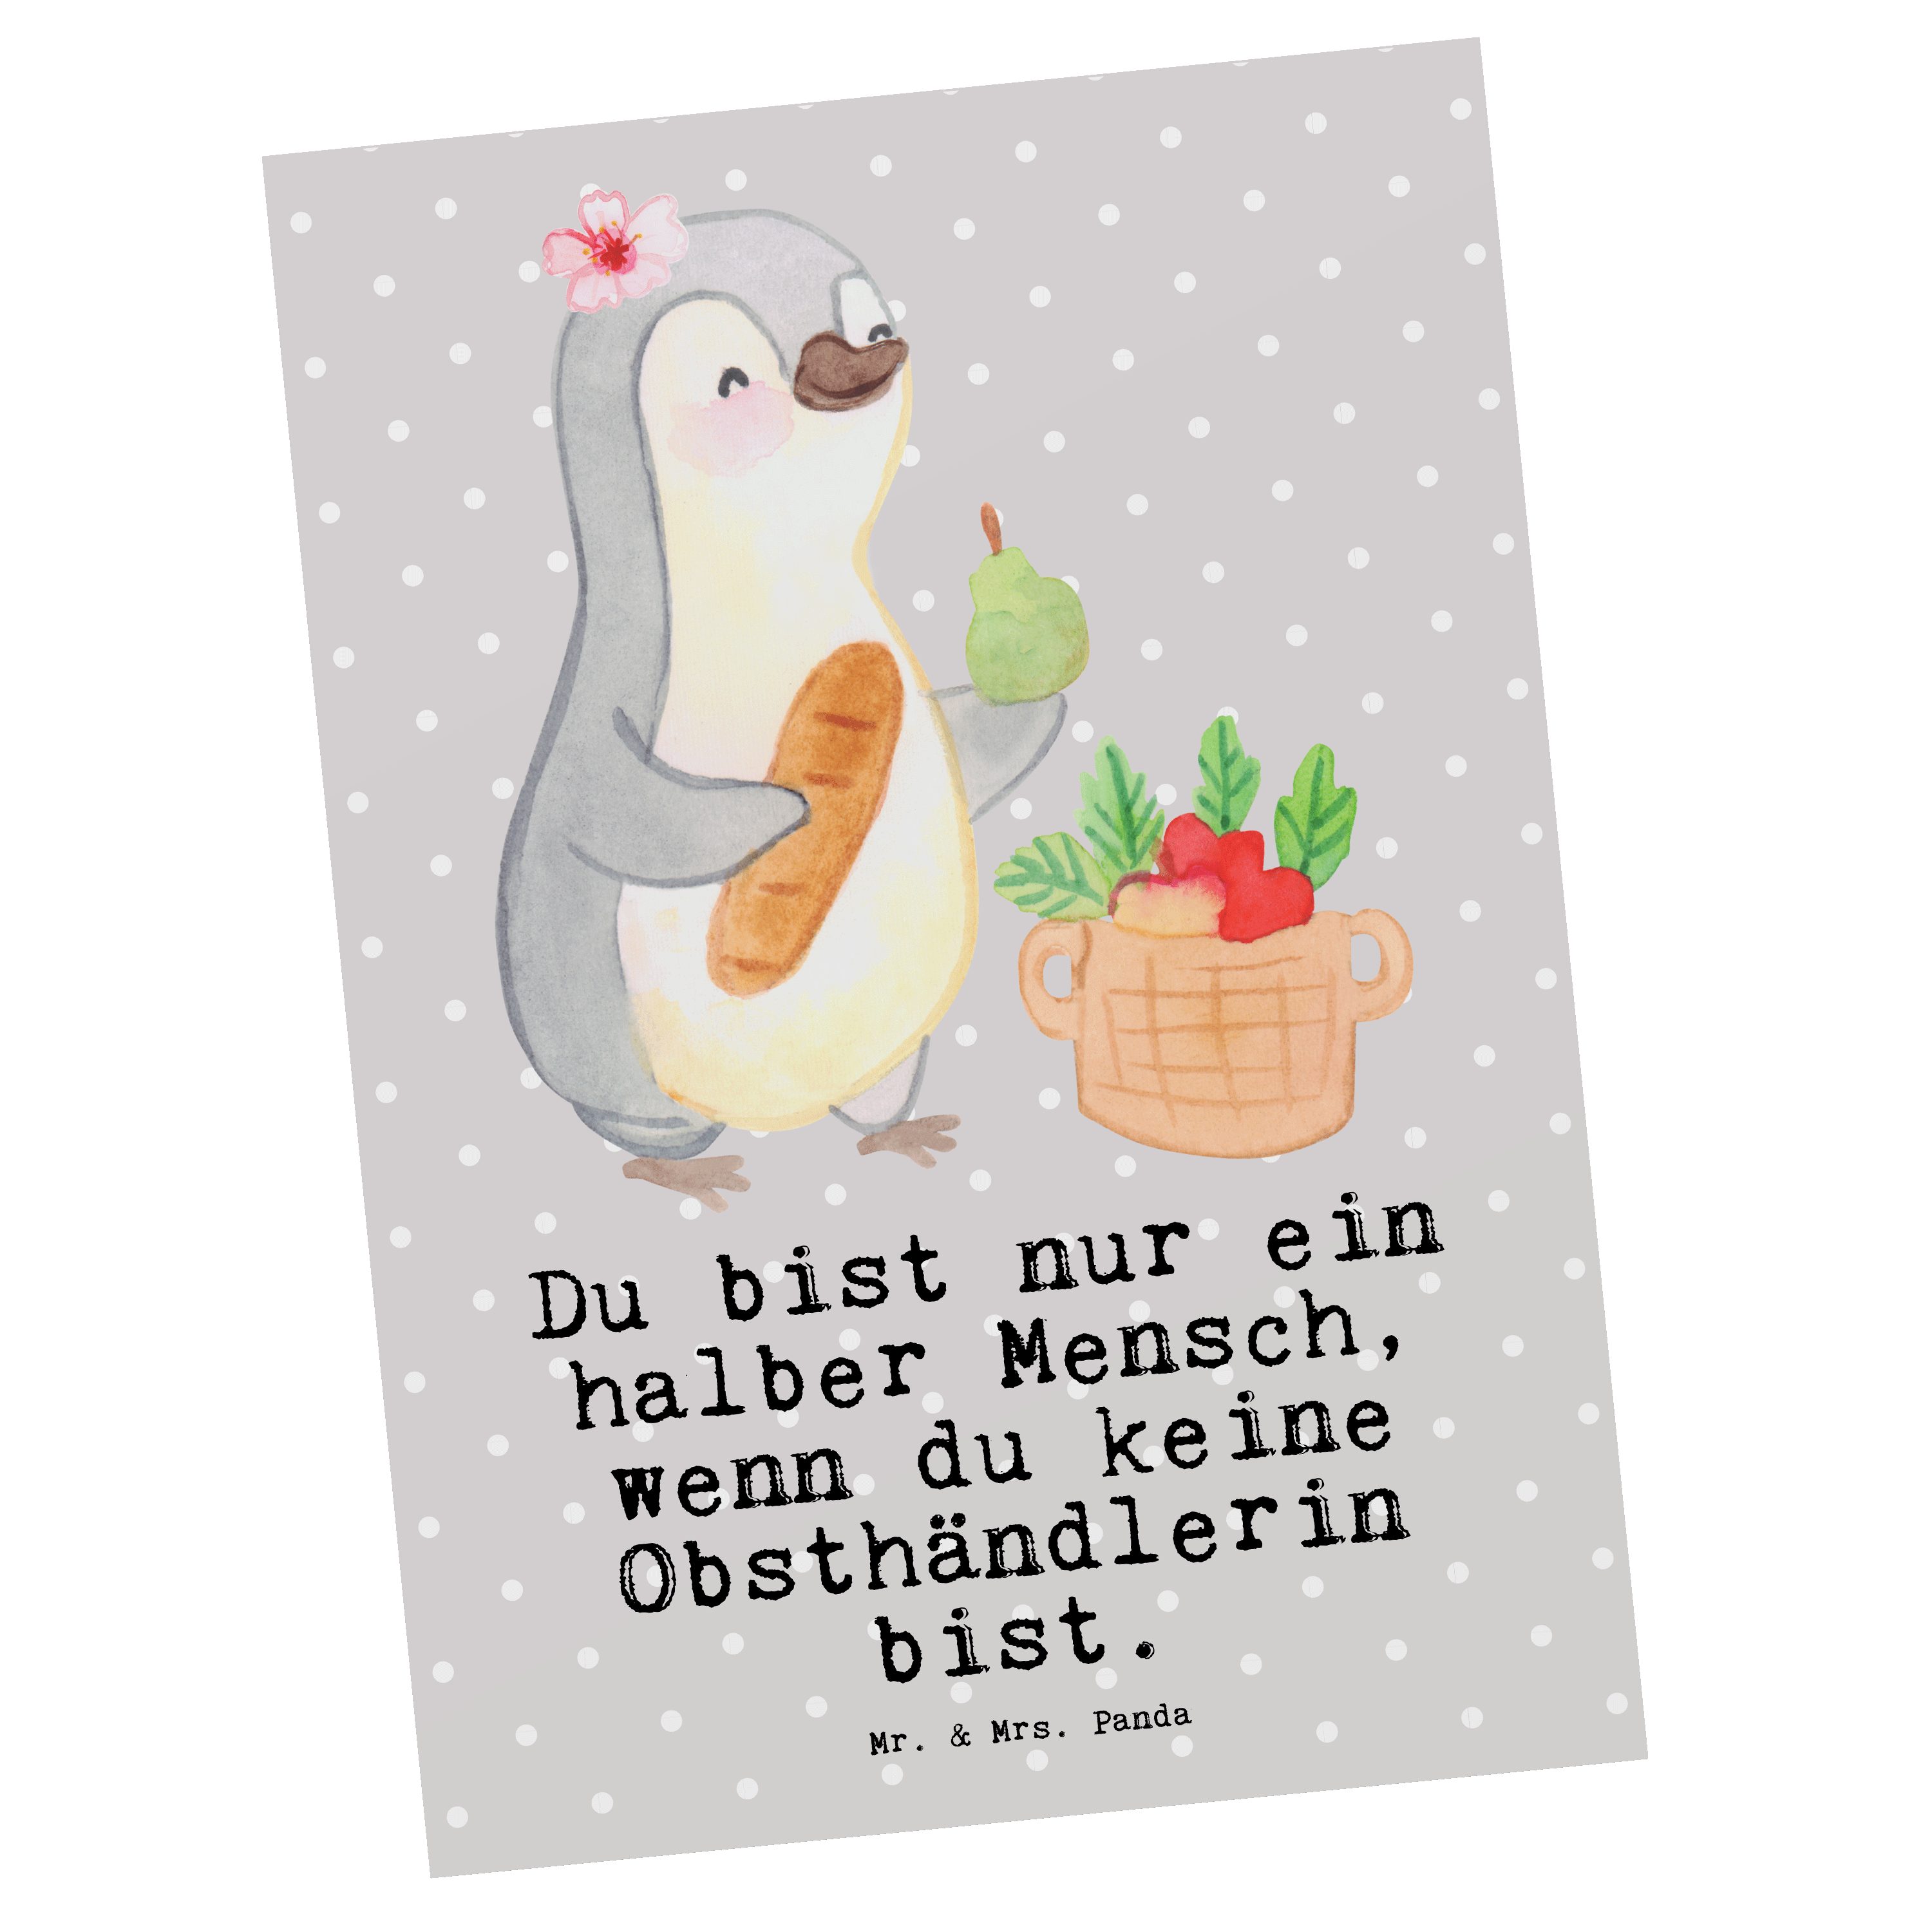 Obsthändlerin Grau & mit - - Obstplantage, Herz Mr. Ansic Panda Mrs. Pastell Postkarte Geschenk,